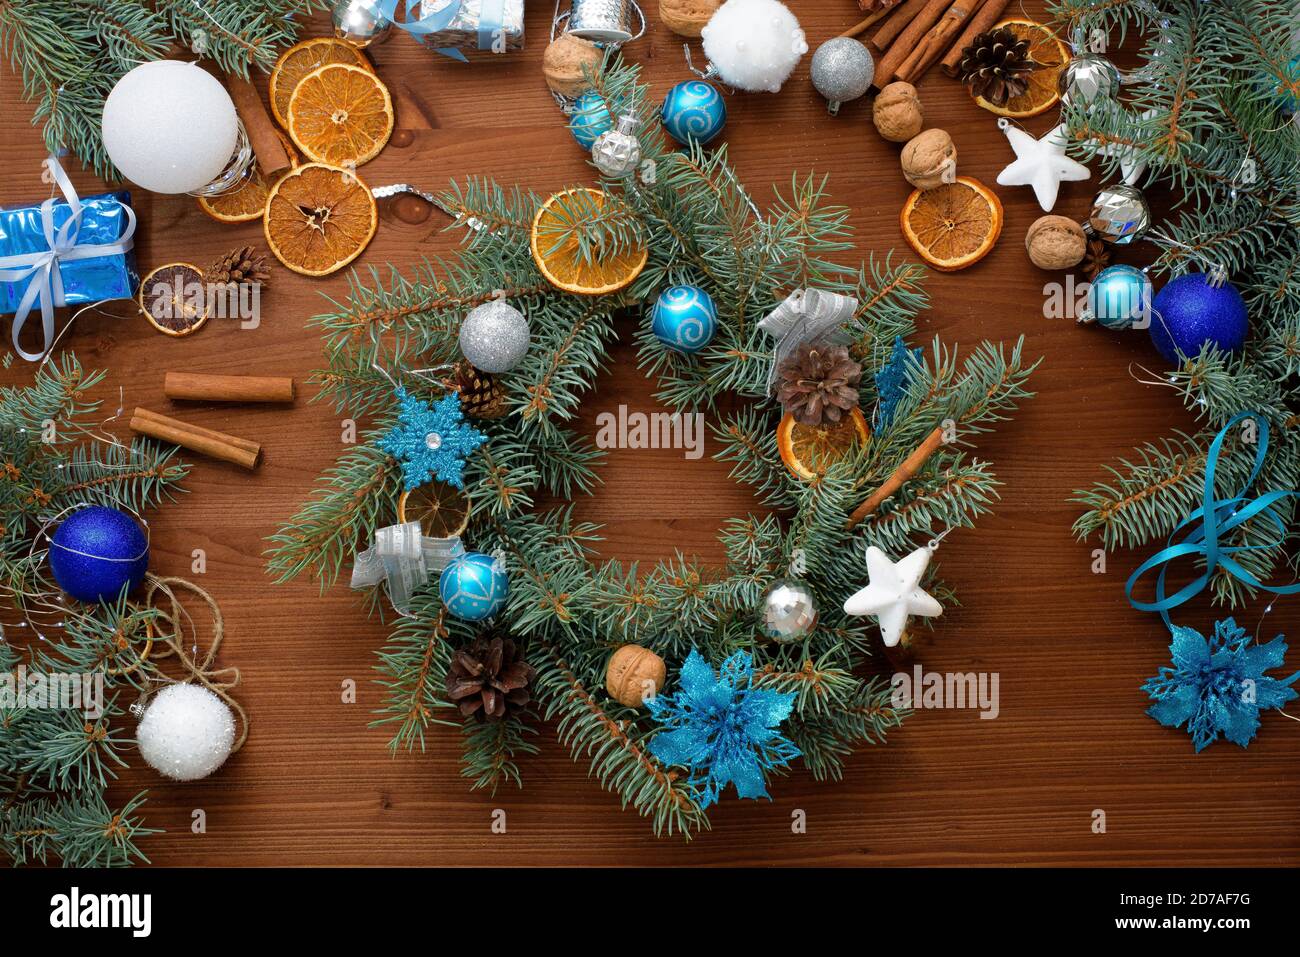 Processus étape par étape de fabrication d'une couronne d'arbre de Noël à la maison à partir de branches d'épinette, d'oranges et de boules de Noël dans les couleurs argent et bleu de la Banque D'Images